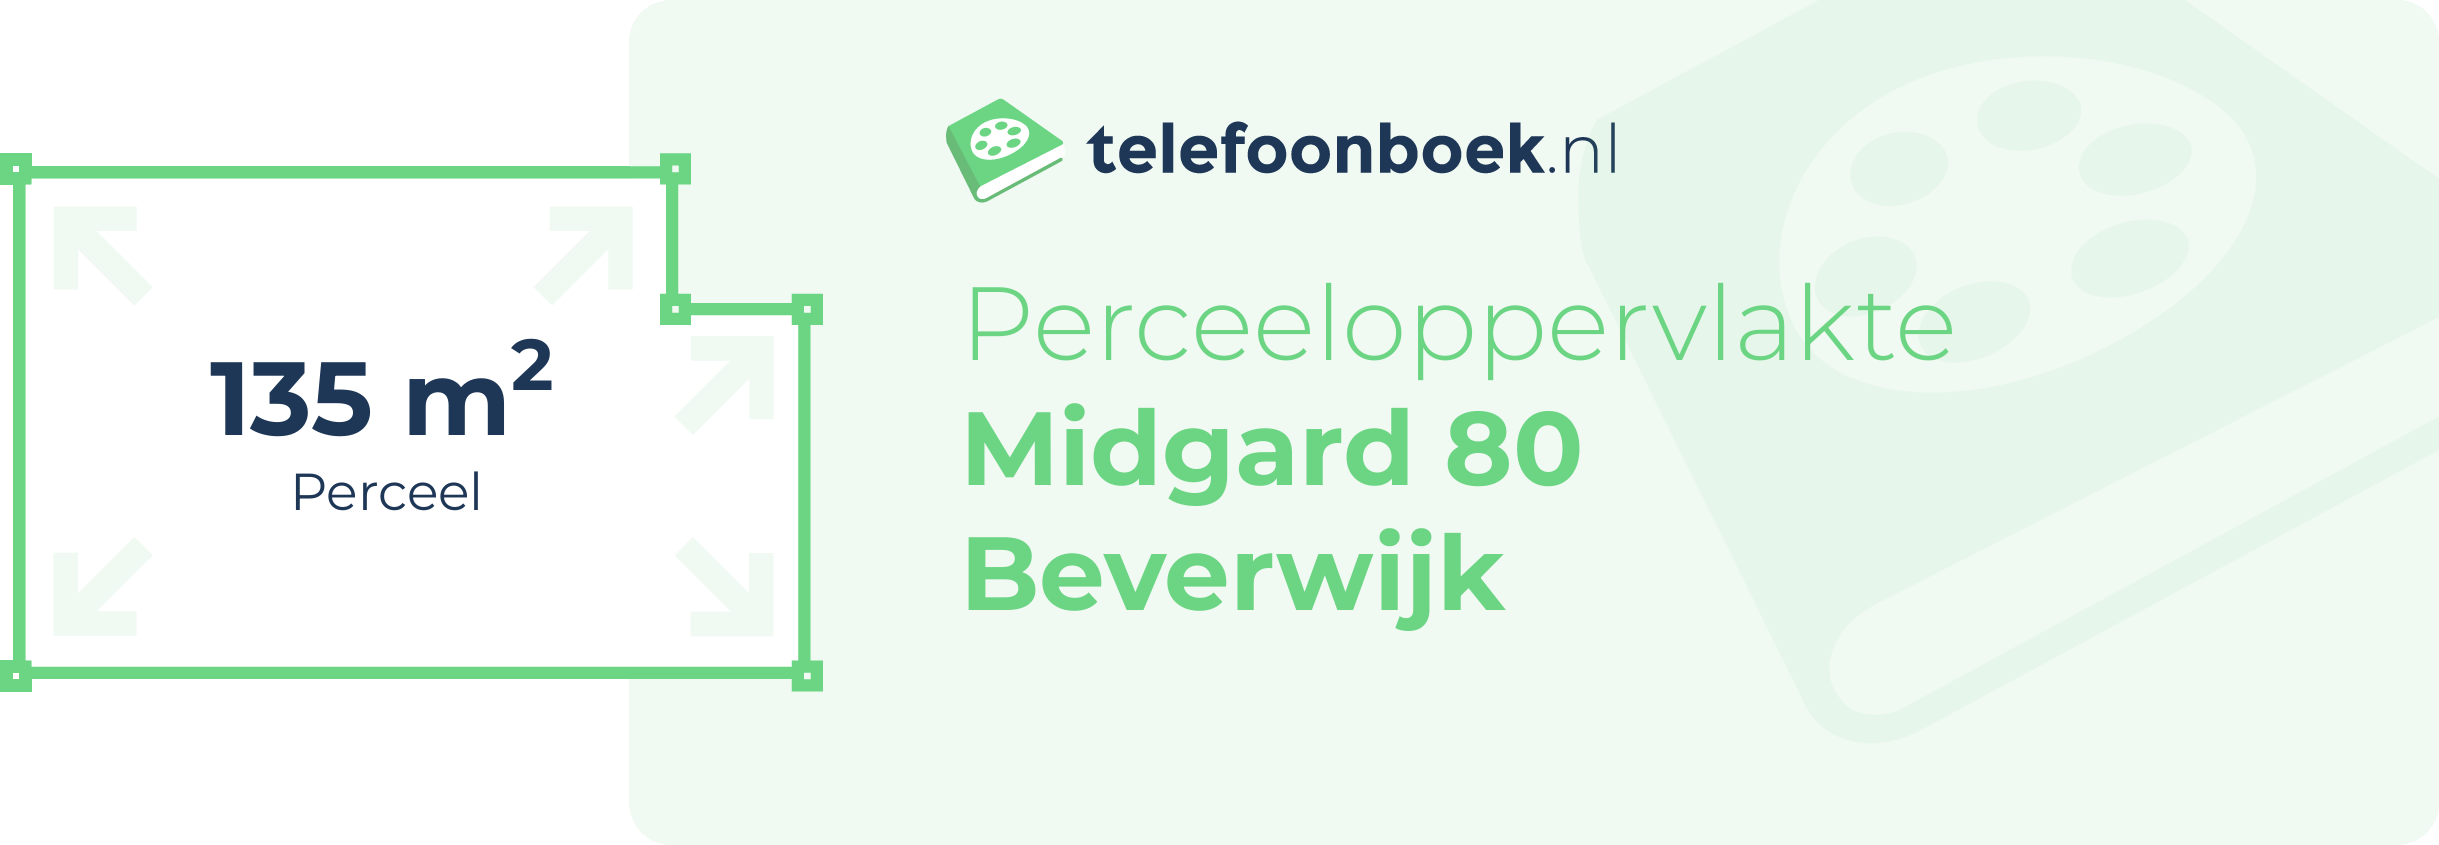 Perceeloppervlakte Midgard 80 Beverwijk